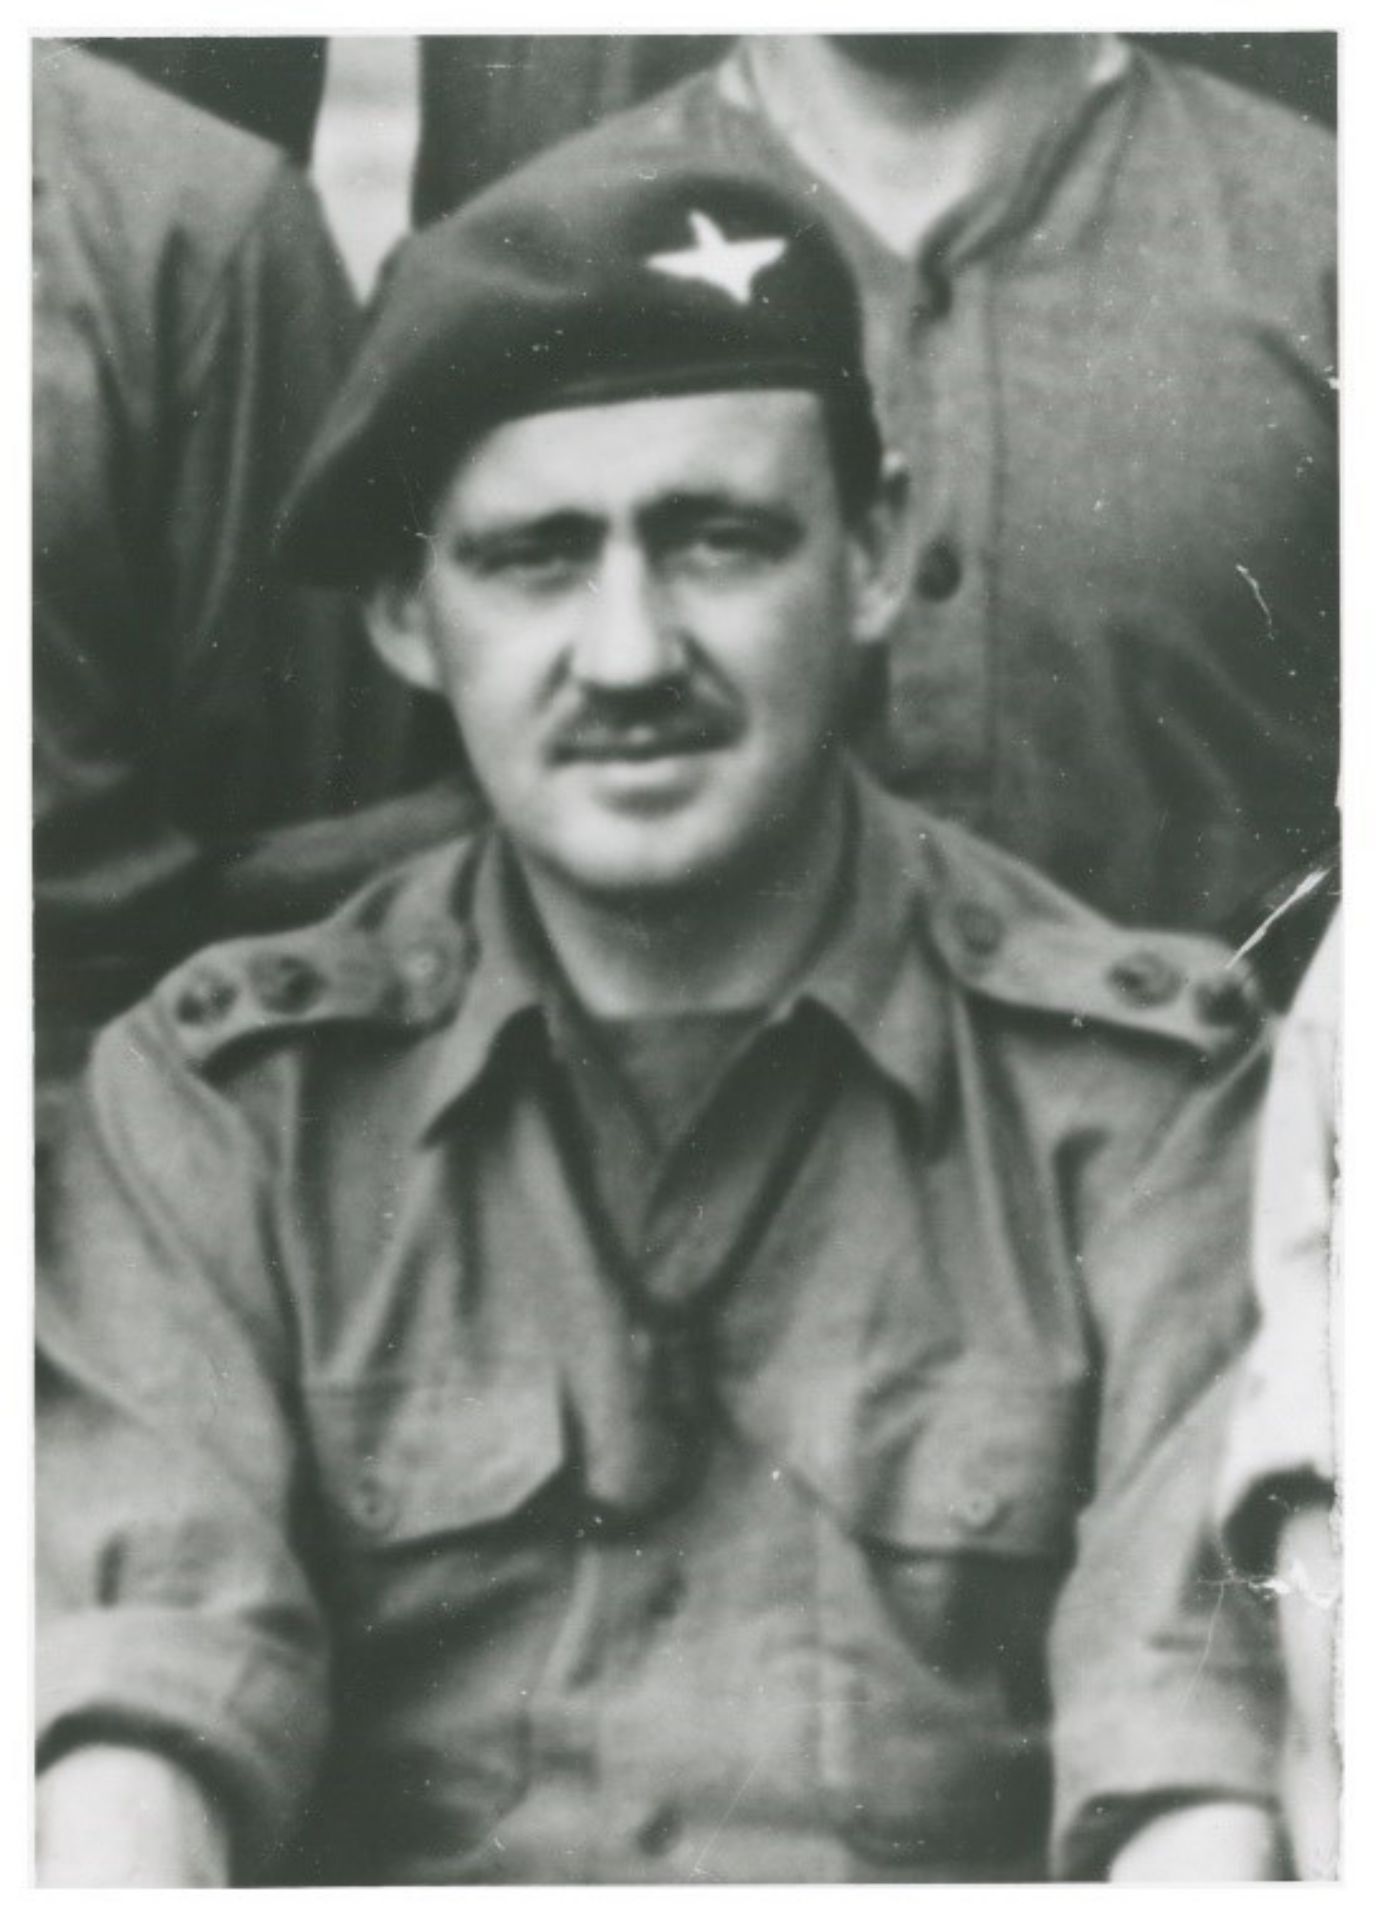 Een foto van de Britse luitenant-kolonel John Frost. Hij kreeg de opdracht om de bruggen over de Rijn bij Arnhem op de Duitsers te veroveren. De brug is later naar hem vernoemd.